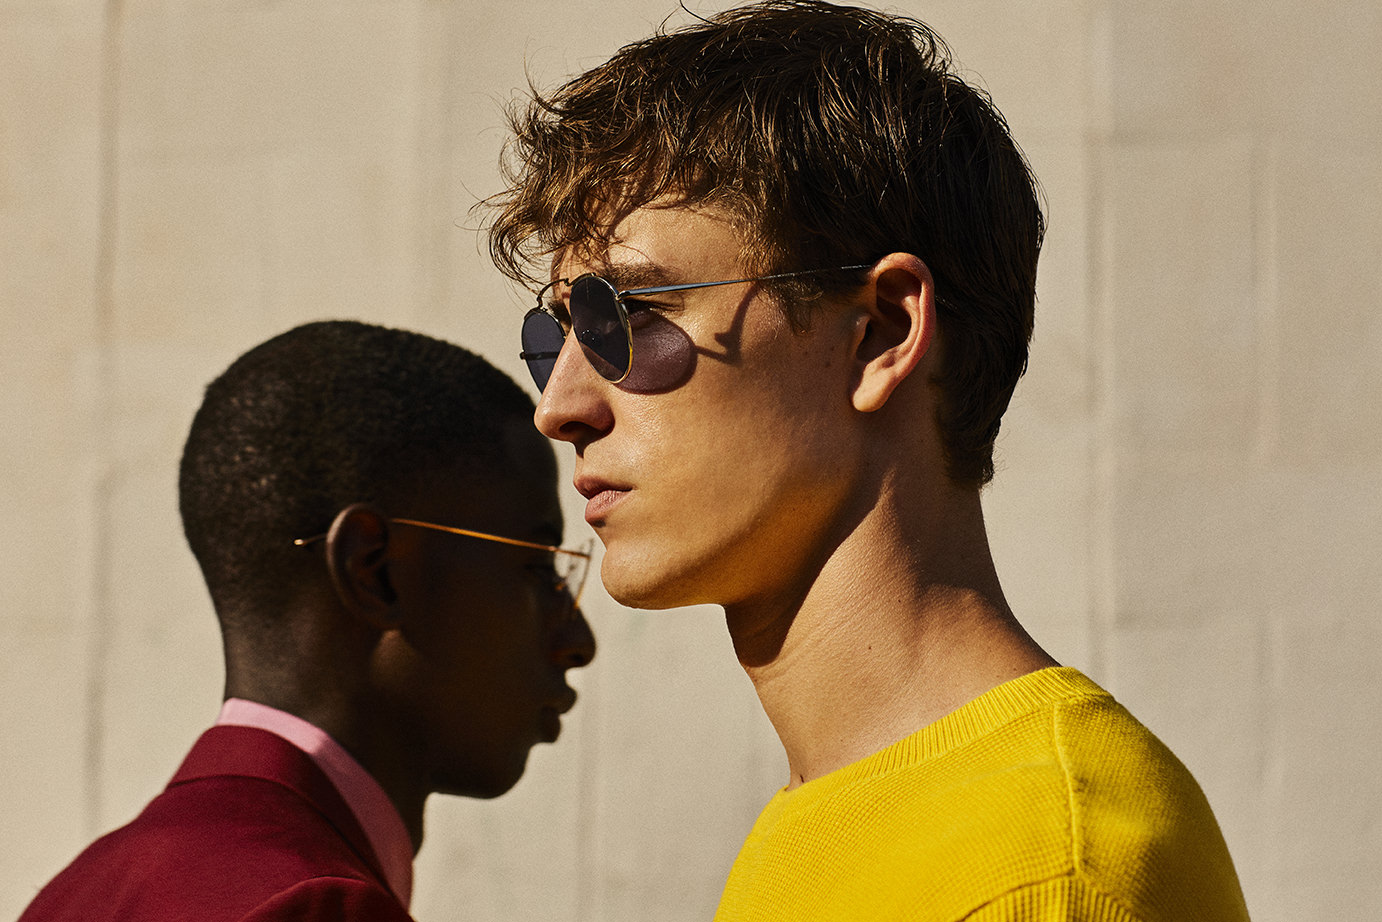 Brillenmarke Gigi Barcelona - Zwei junge Männer mit Sonnenbrille